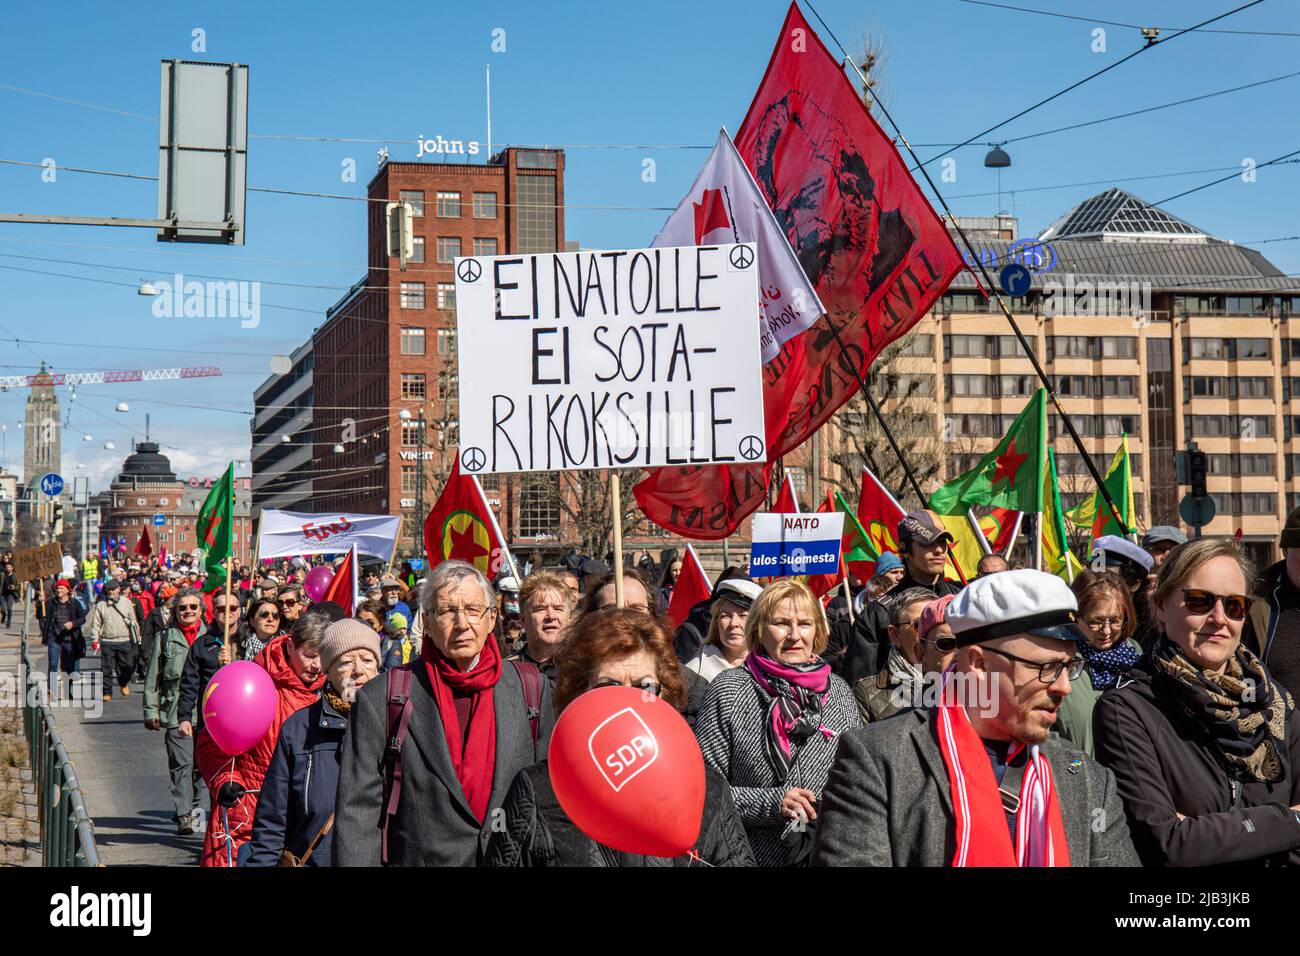 EI NATOLLE. Handgeschriebenes Schild bei der sozialistischen Parade zum 1. Mai am Internationalen Arbeitertag in Helsinki, Finnland. Stockfoto